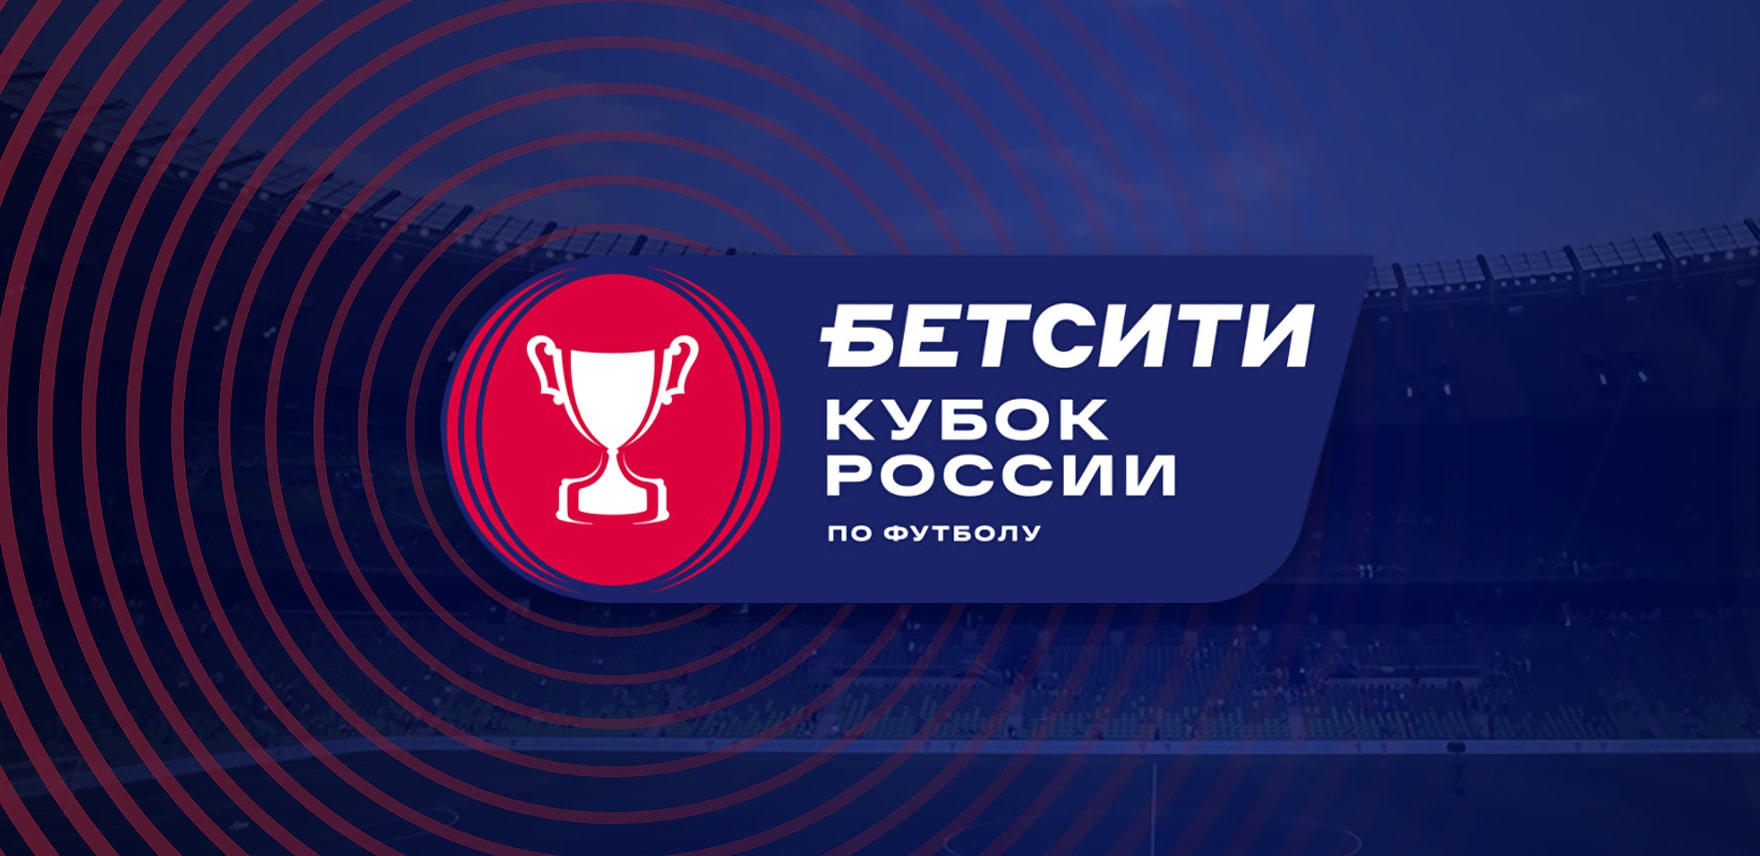 ВКонтакте и Одноклассники бесплатно покажут все матчи плей-офф Бетсити Кубок России по футболу